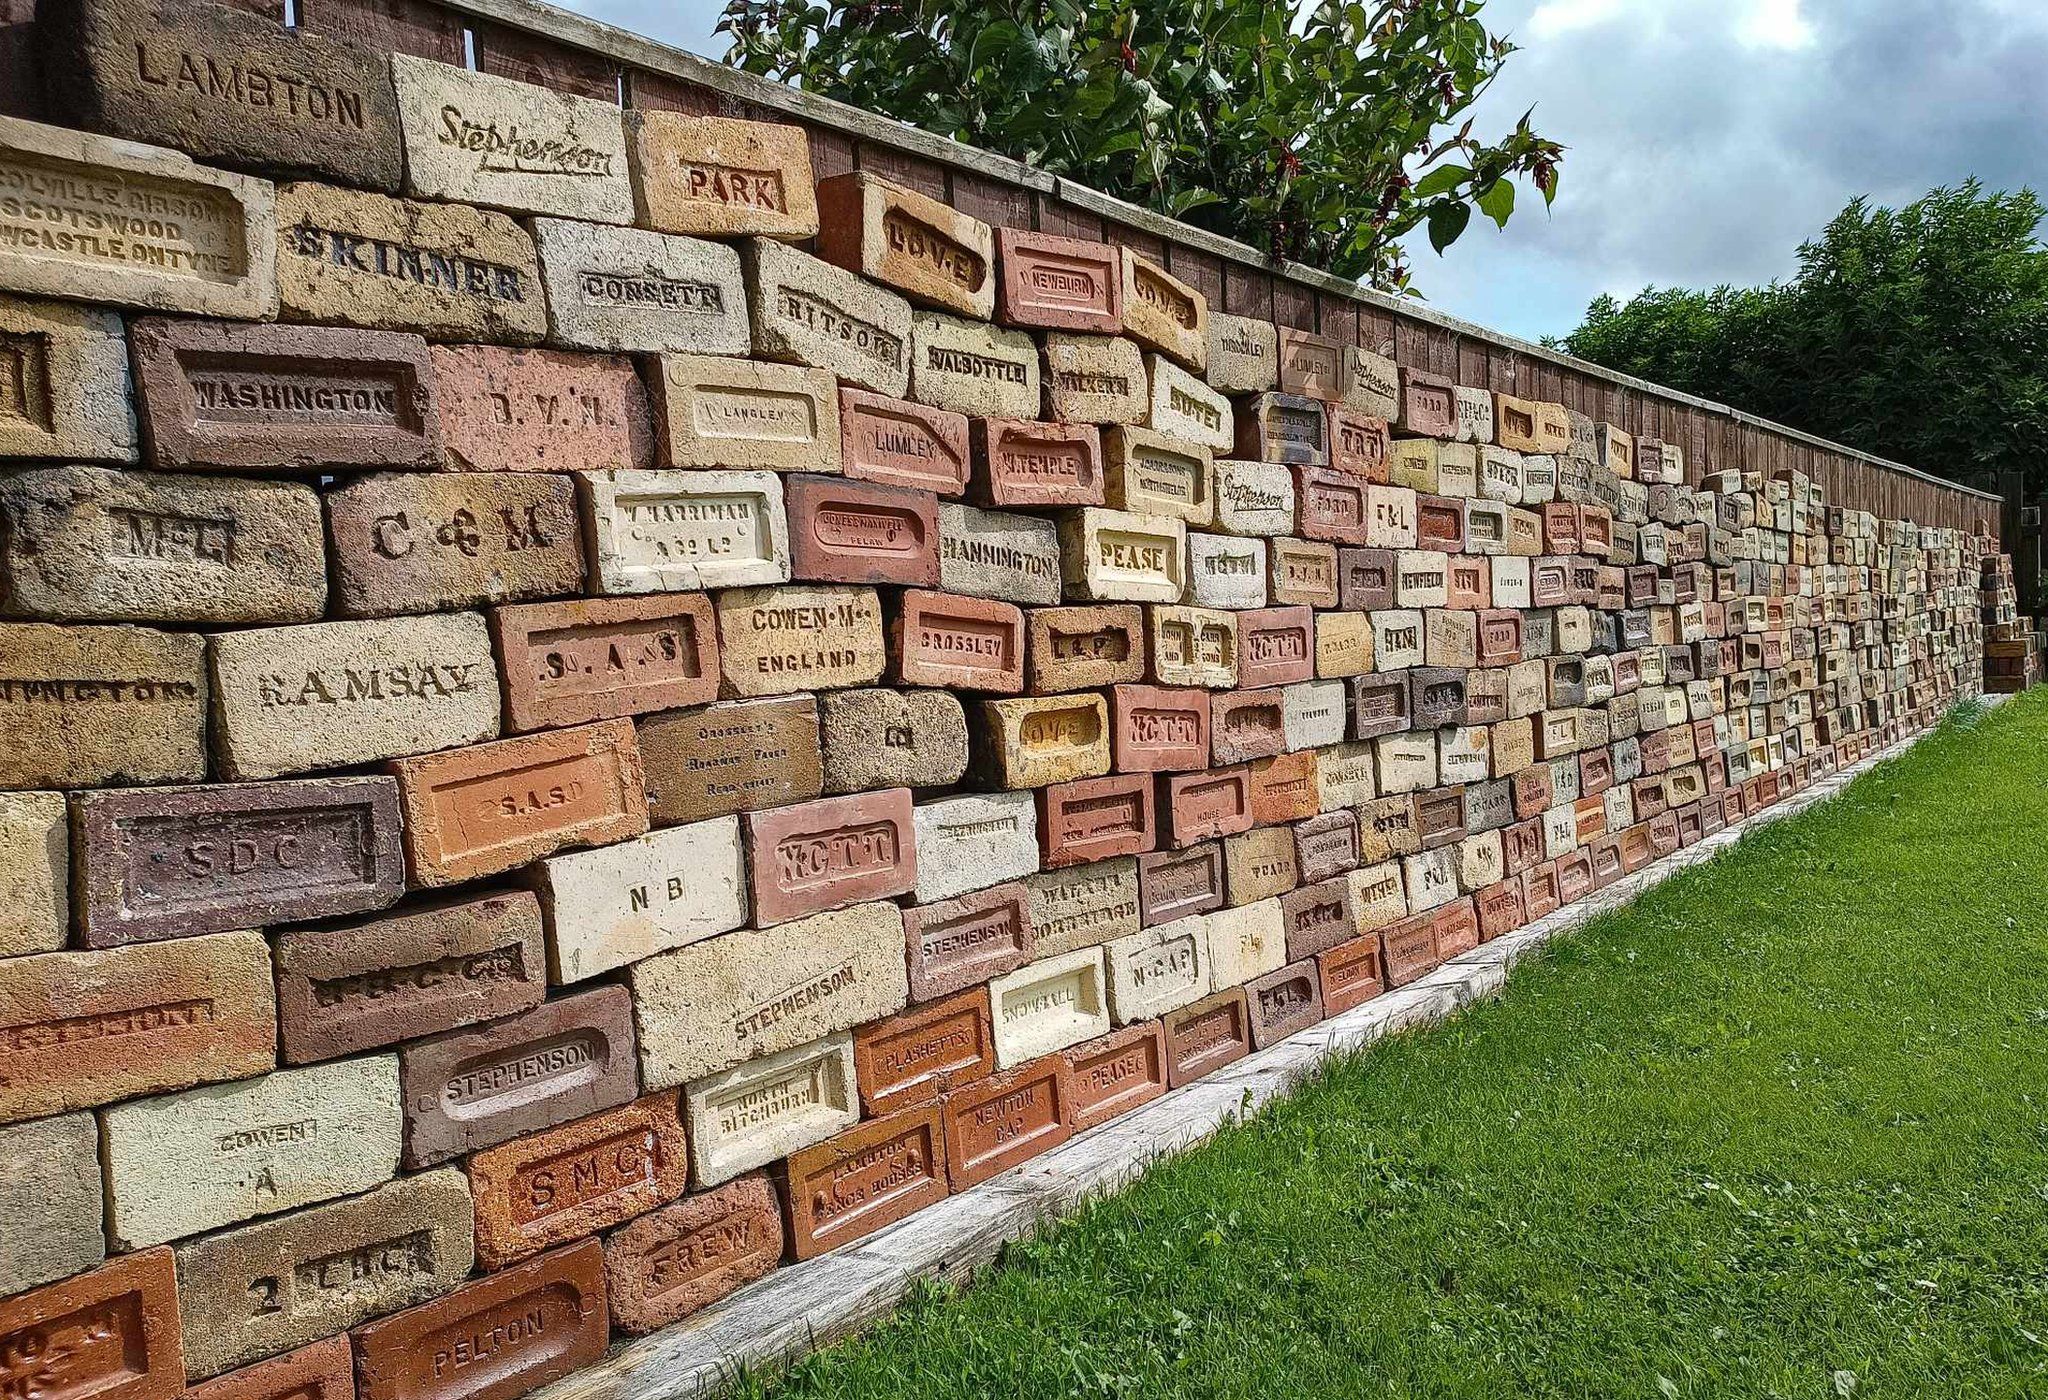 Bricks formed into a temporary wall in Chris Tilney's garden